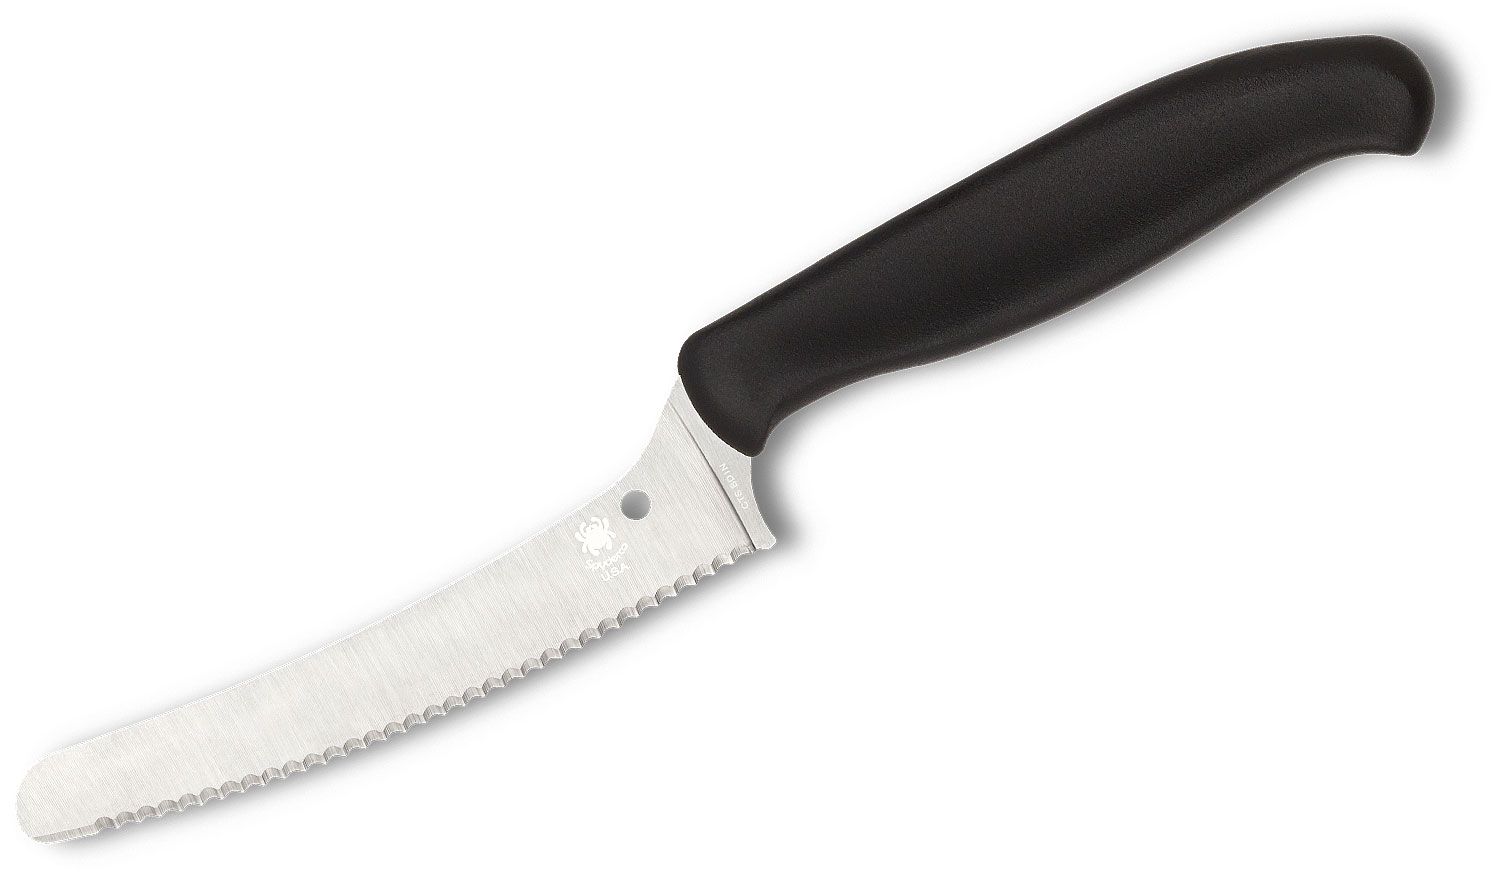 Spyderco Blunt-tip Z-Cut - Serrated Blade - Black Knife